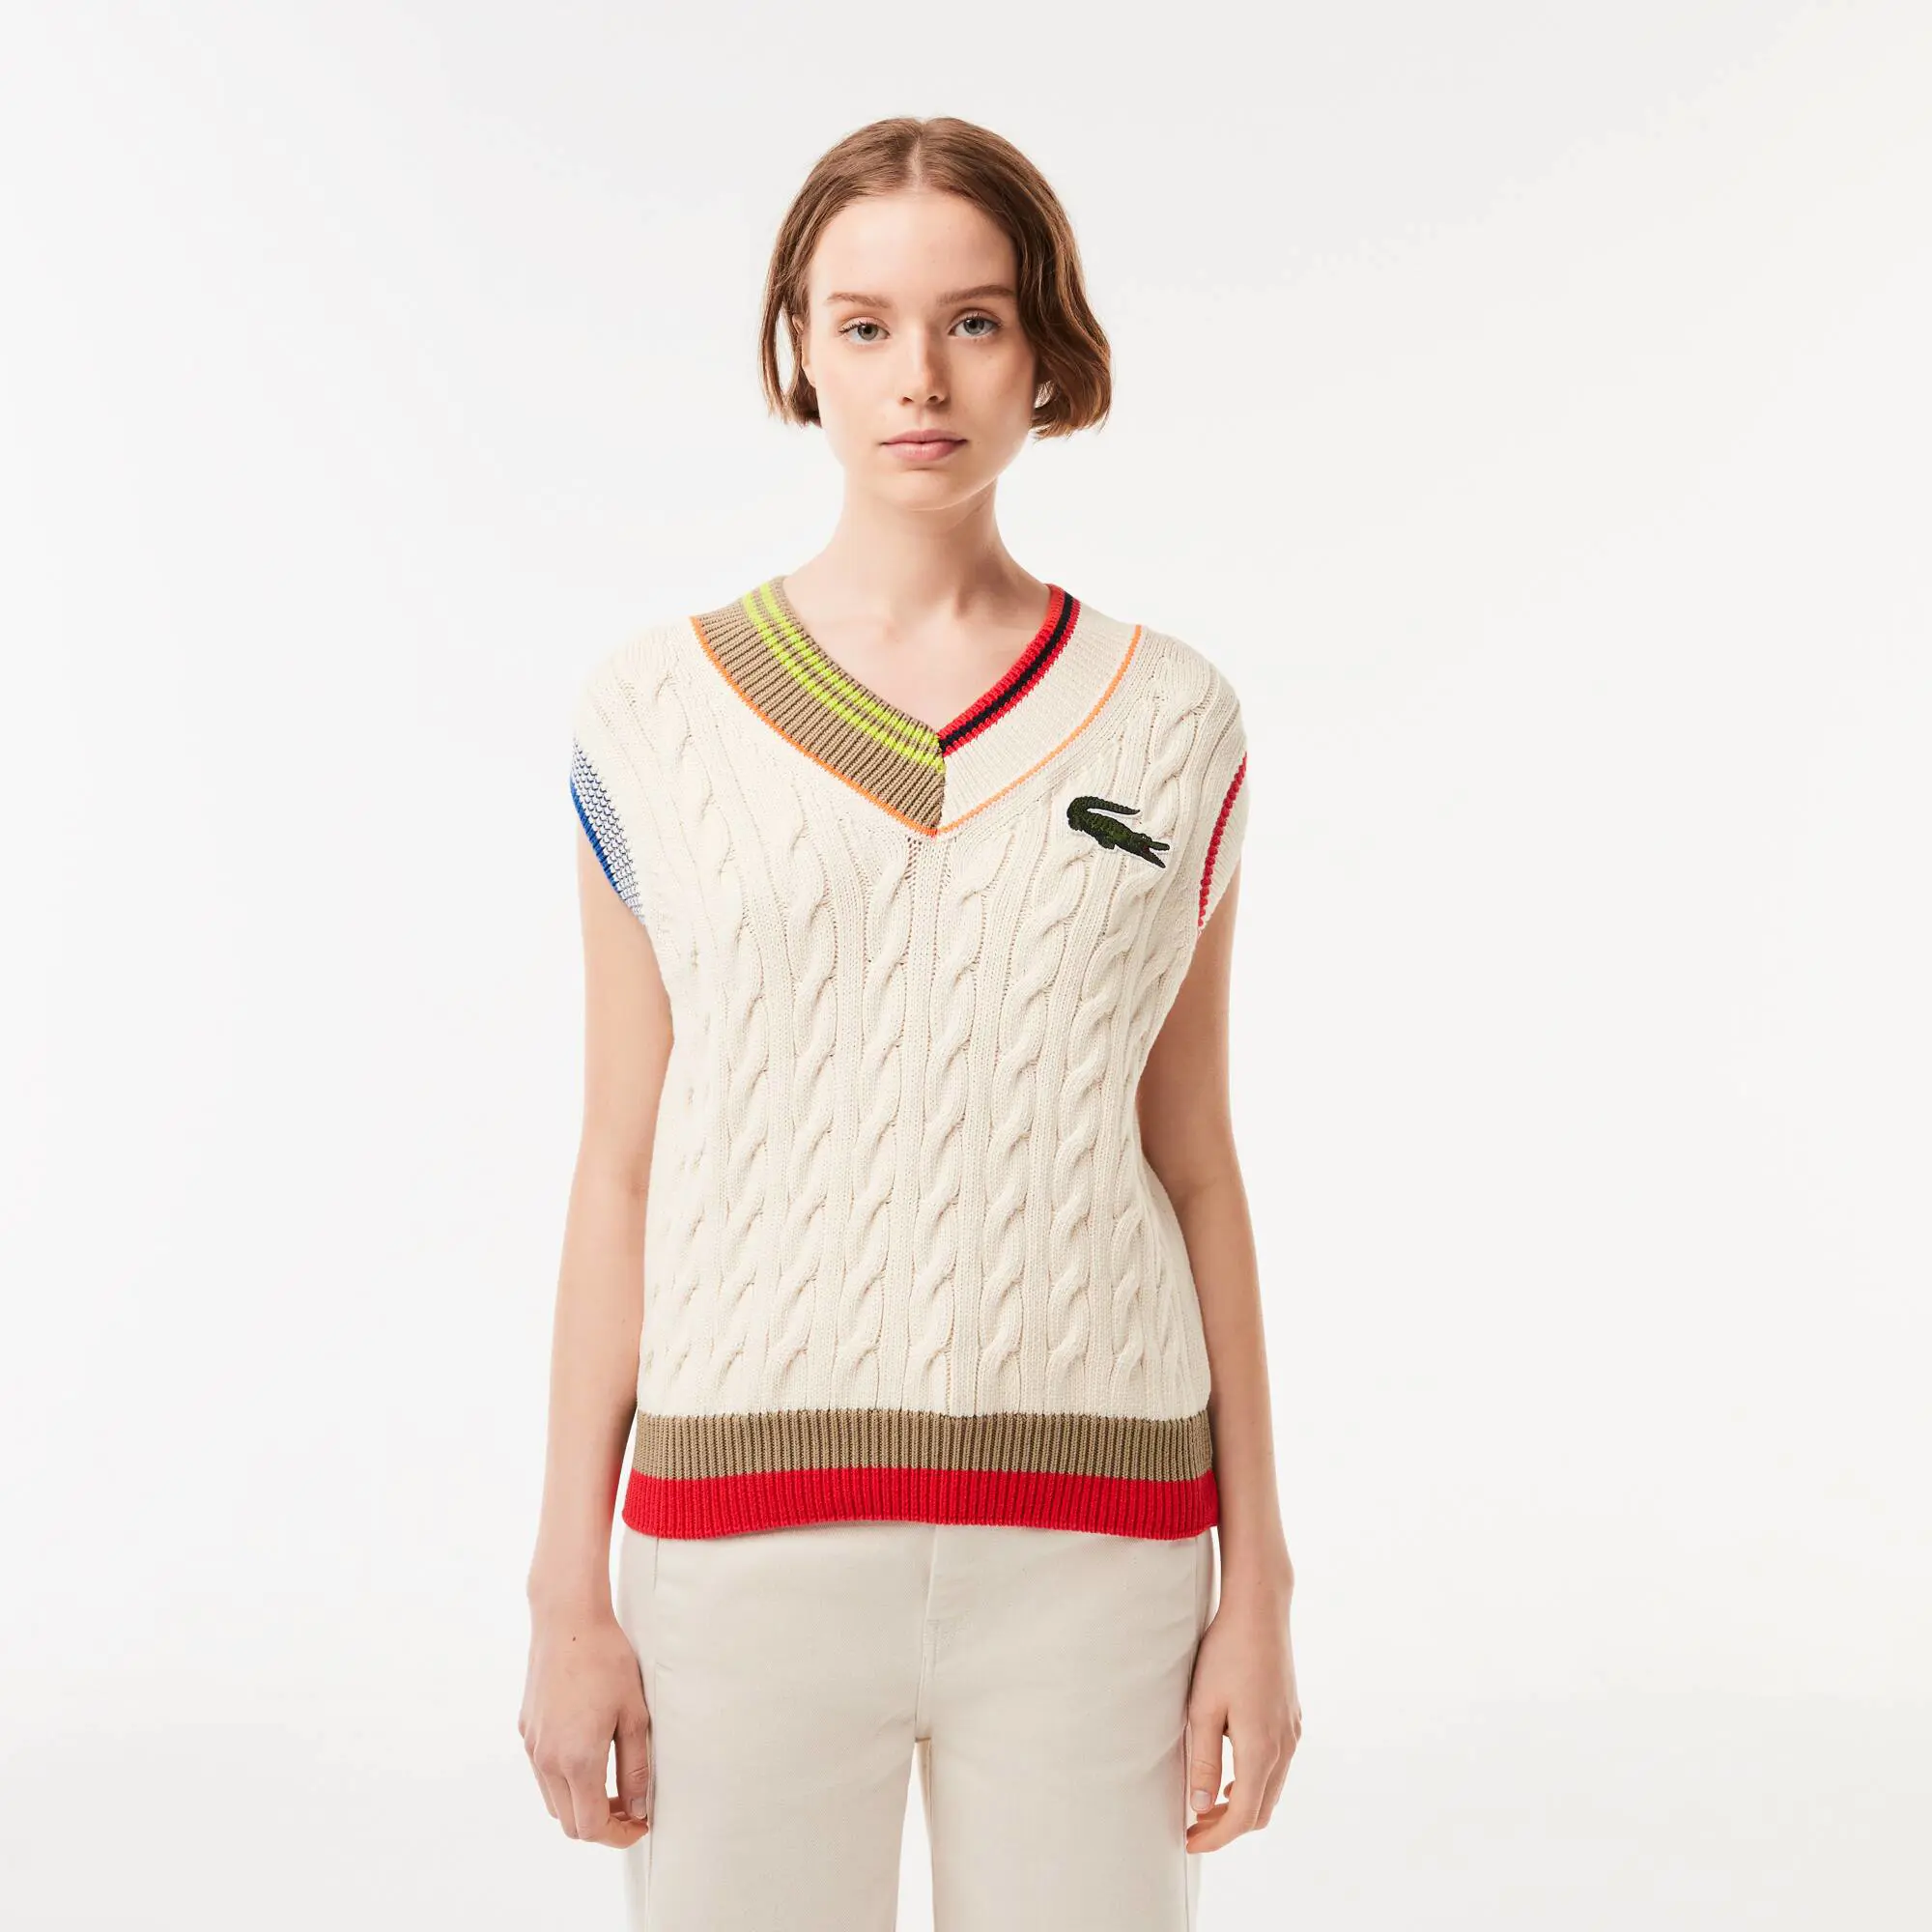 Lacoste Women’s Lacoste Cable Knit Sweater Vest. 1